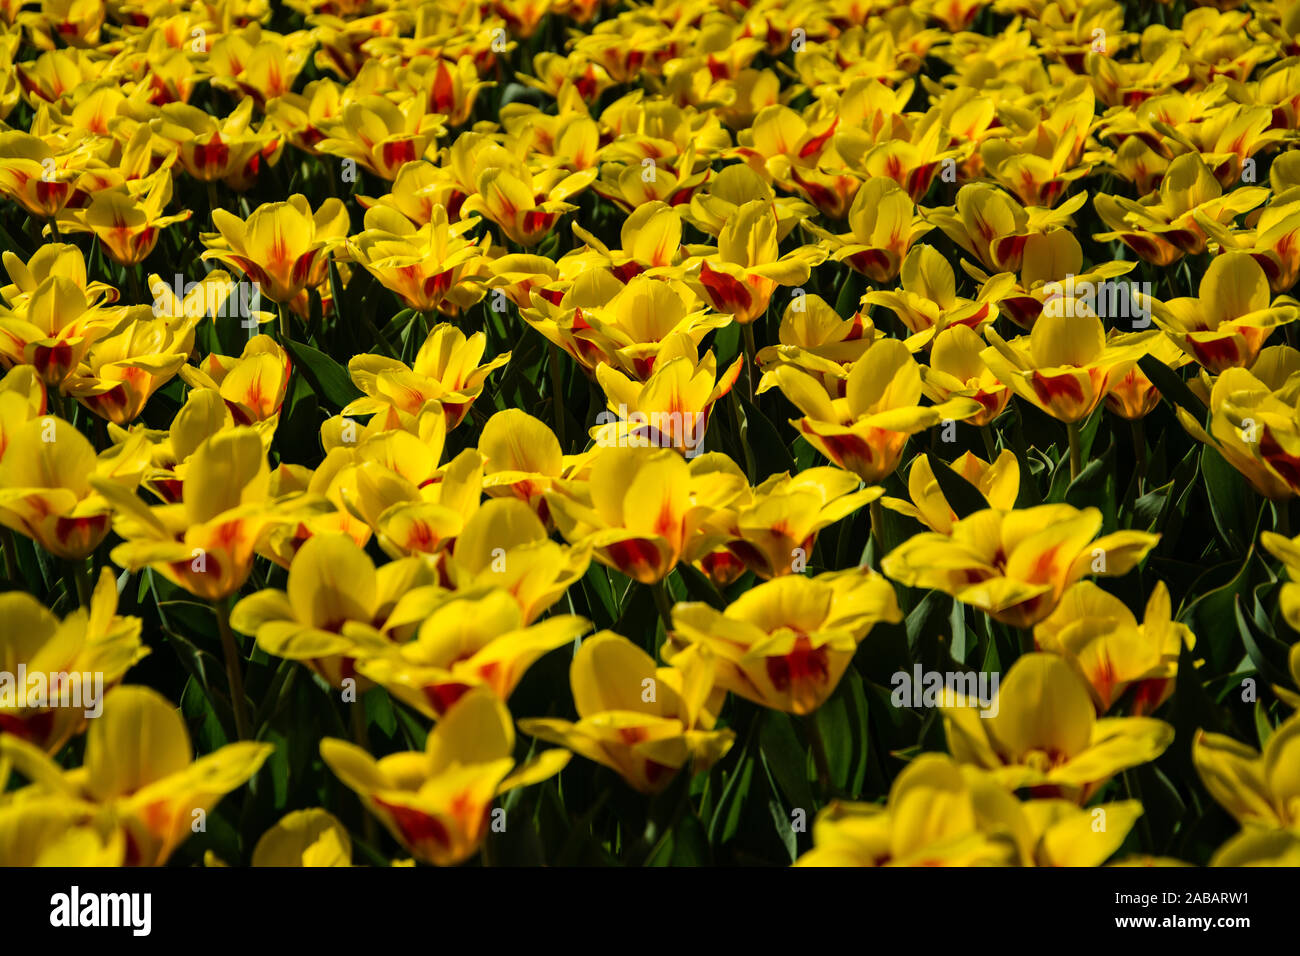 Die Tulpen bilden eine Pflanzengattung in der Familie der Liliengewächse. Die etwa 150 Arten sind in Nordafrika und über Europa bis Zentralasien verbr Stock Photo